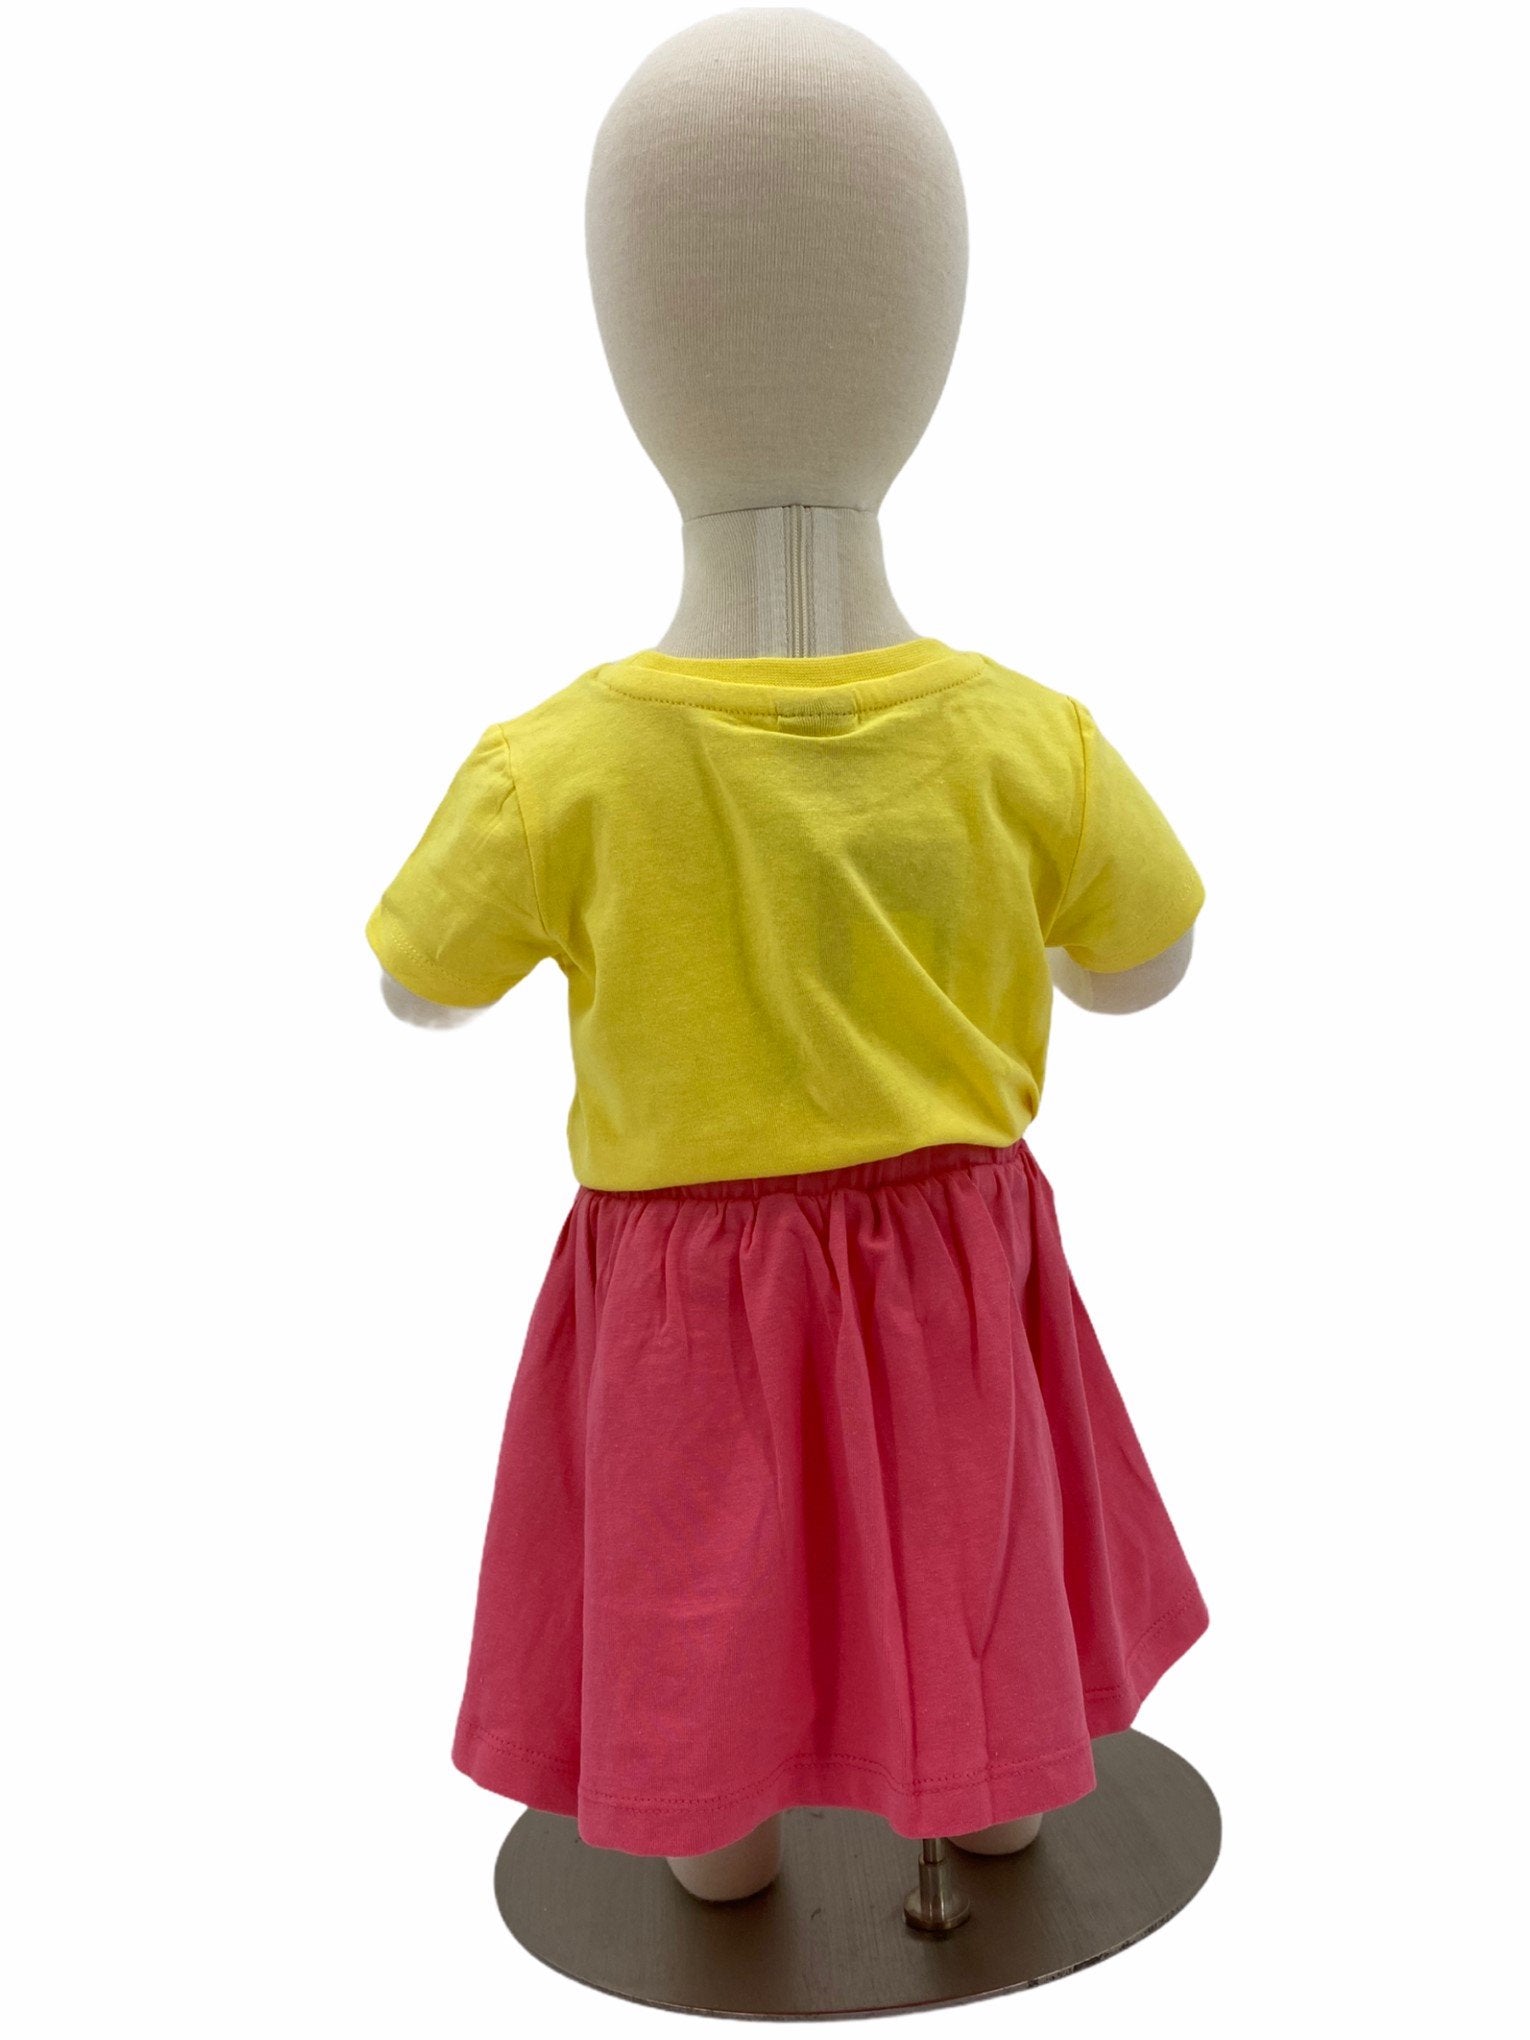 Jupe Nasri - BG0764 1 PINK LEMONADE - Boutique Flos, vêtements pour bébés et enfants